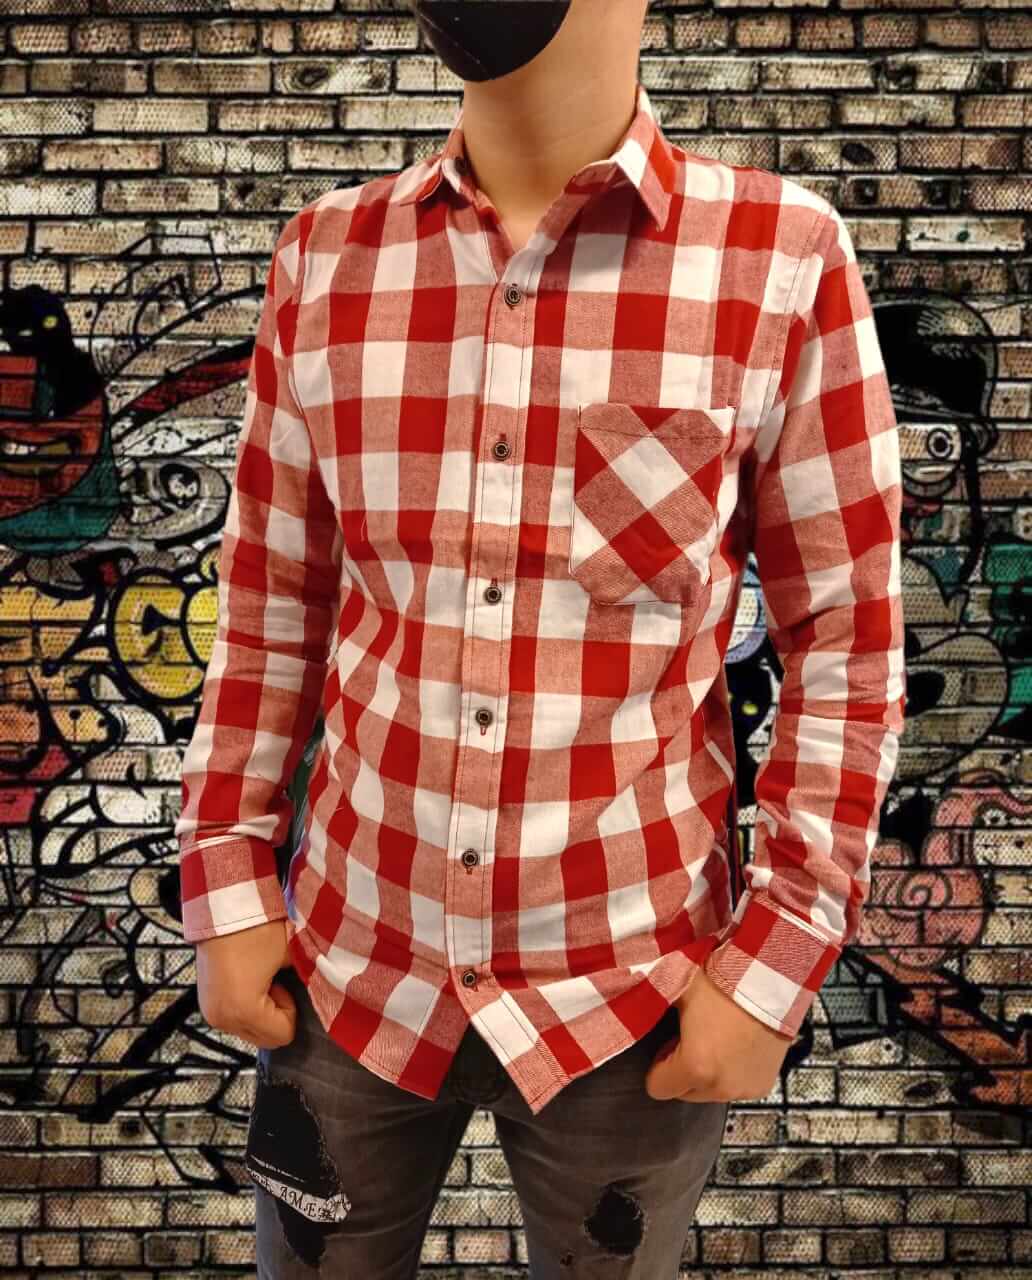 Edredón Enajenar Desprecio Camisa cuadros (Rojo y blanco) – Escaparate Boutique